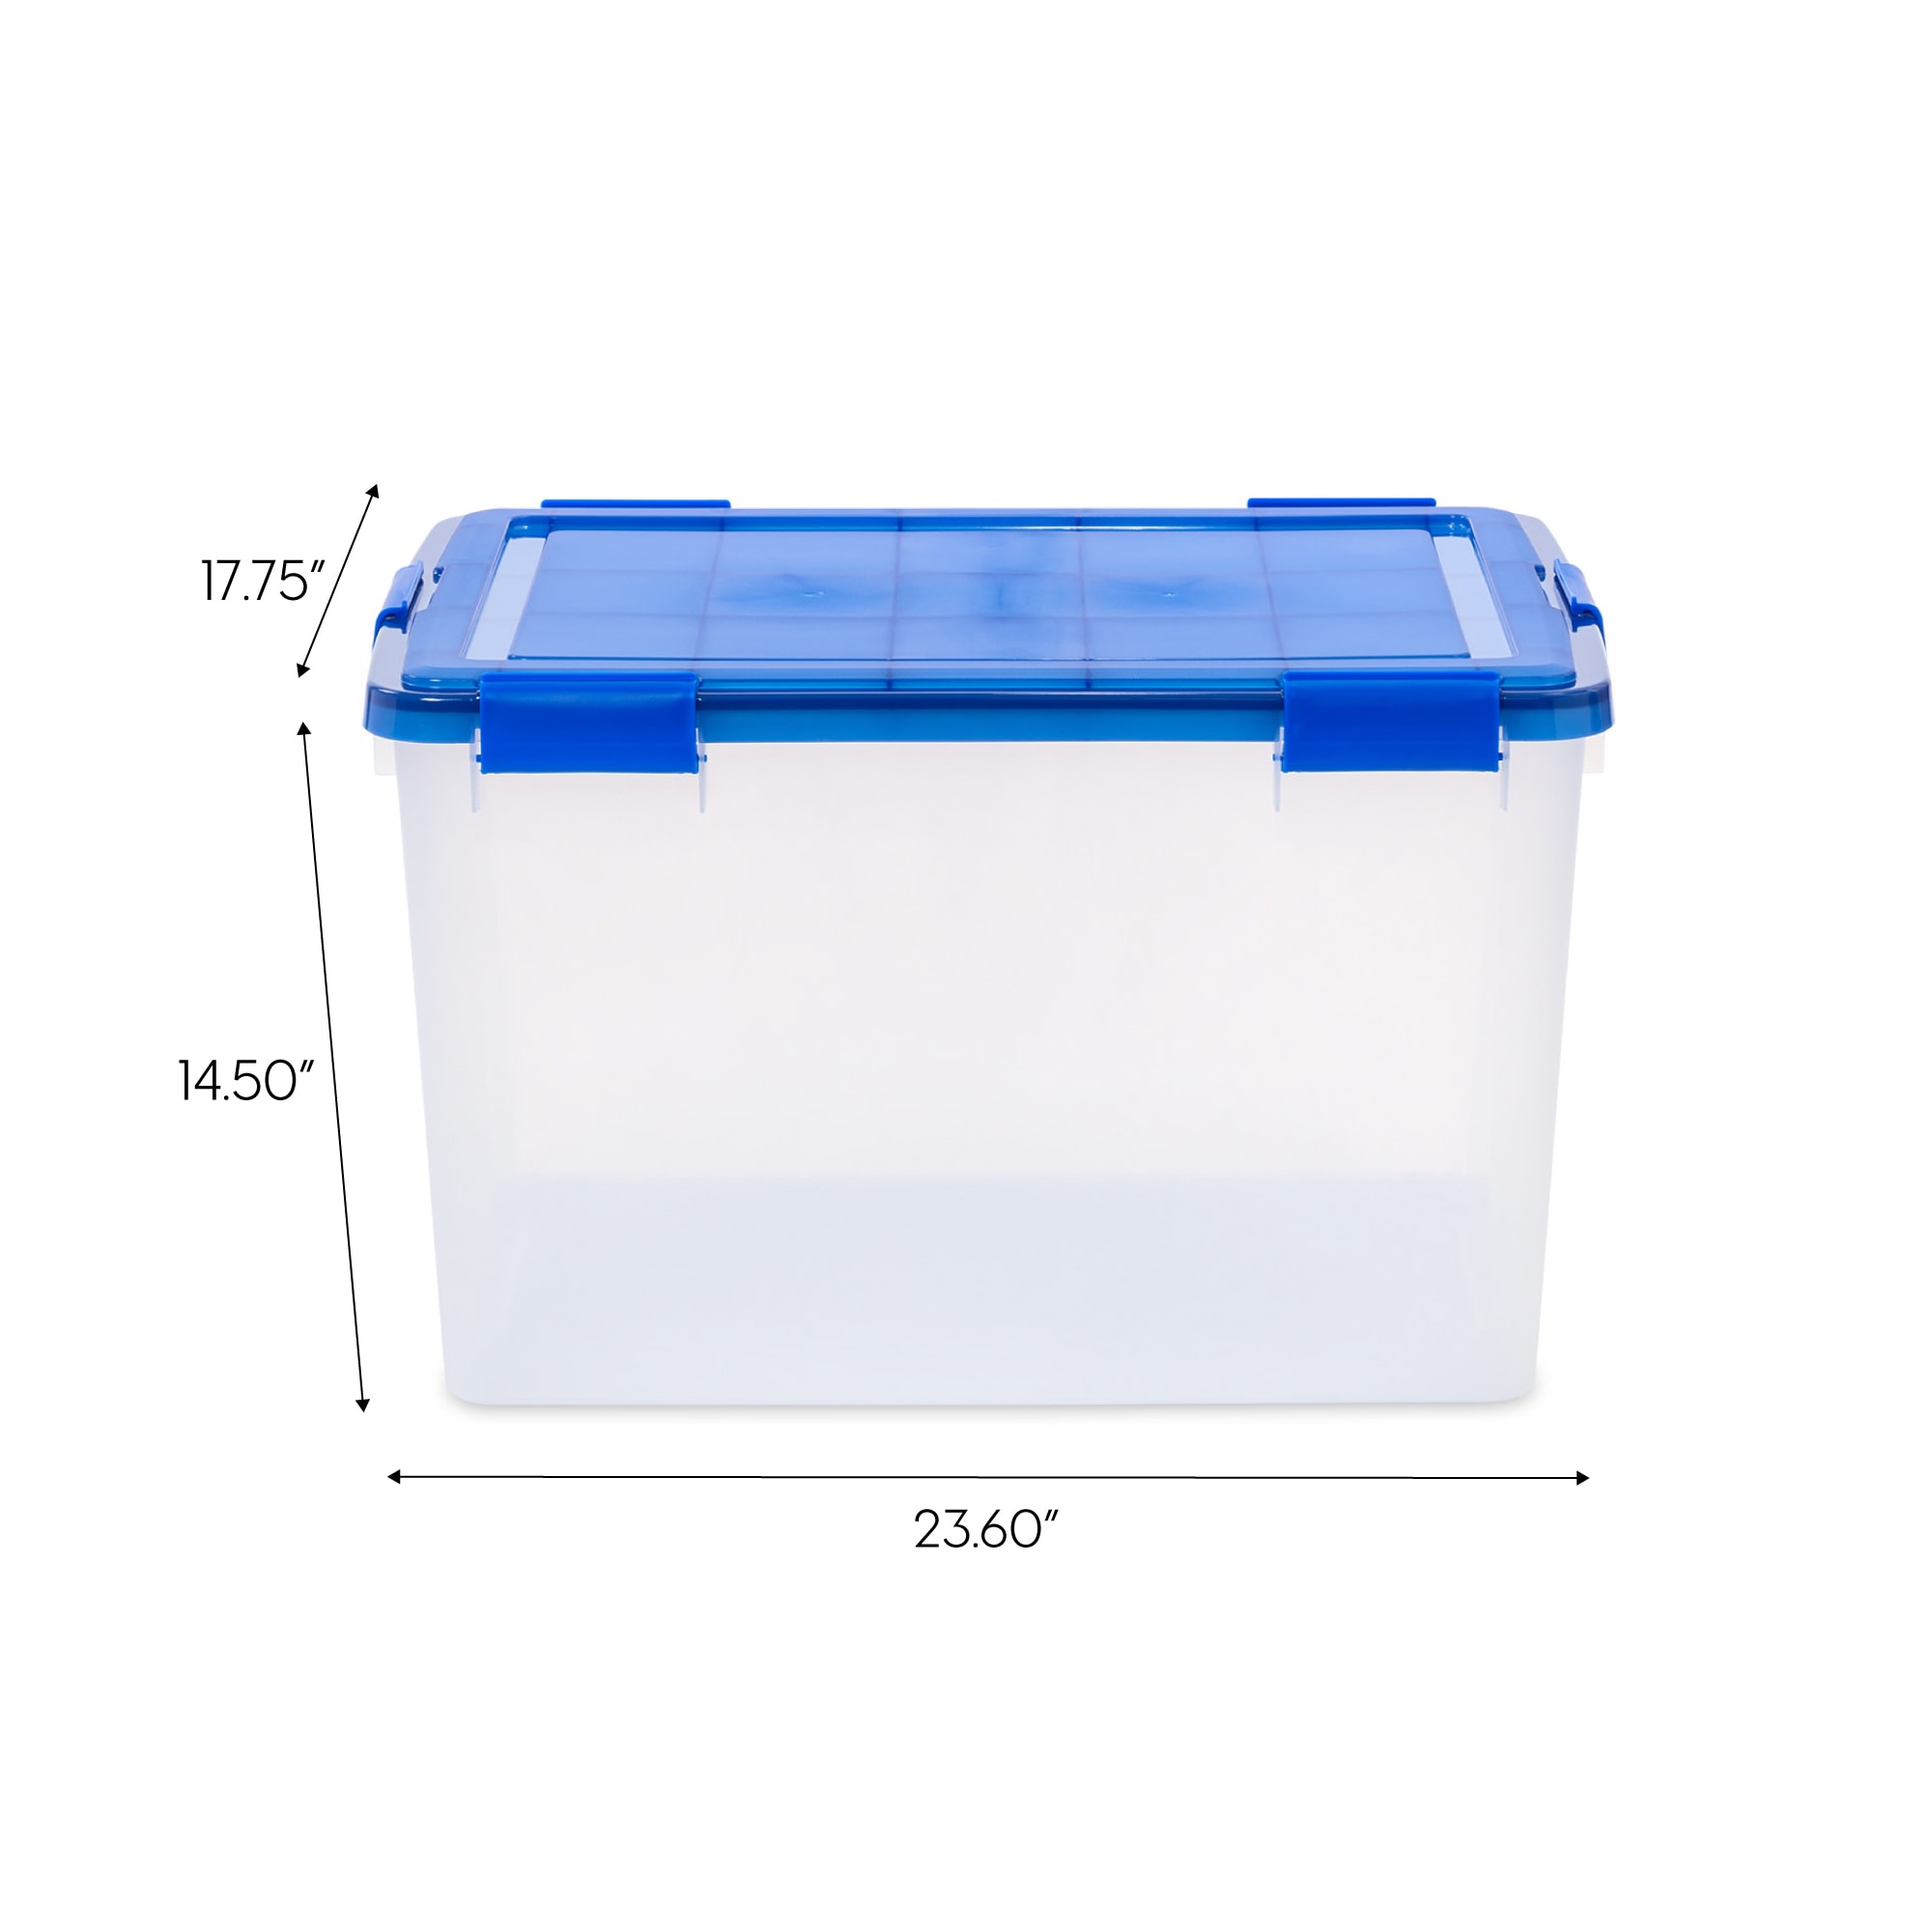 LEGO® XL Blue Storage Bins - 9840 - Set of 6